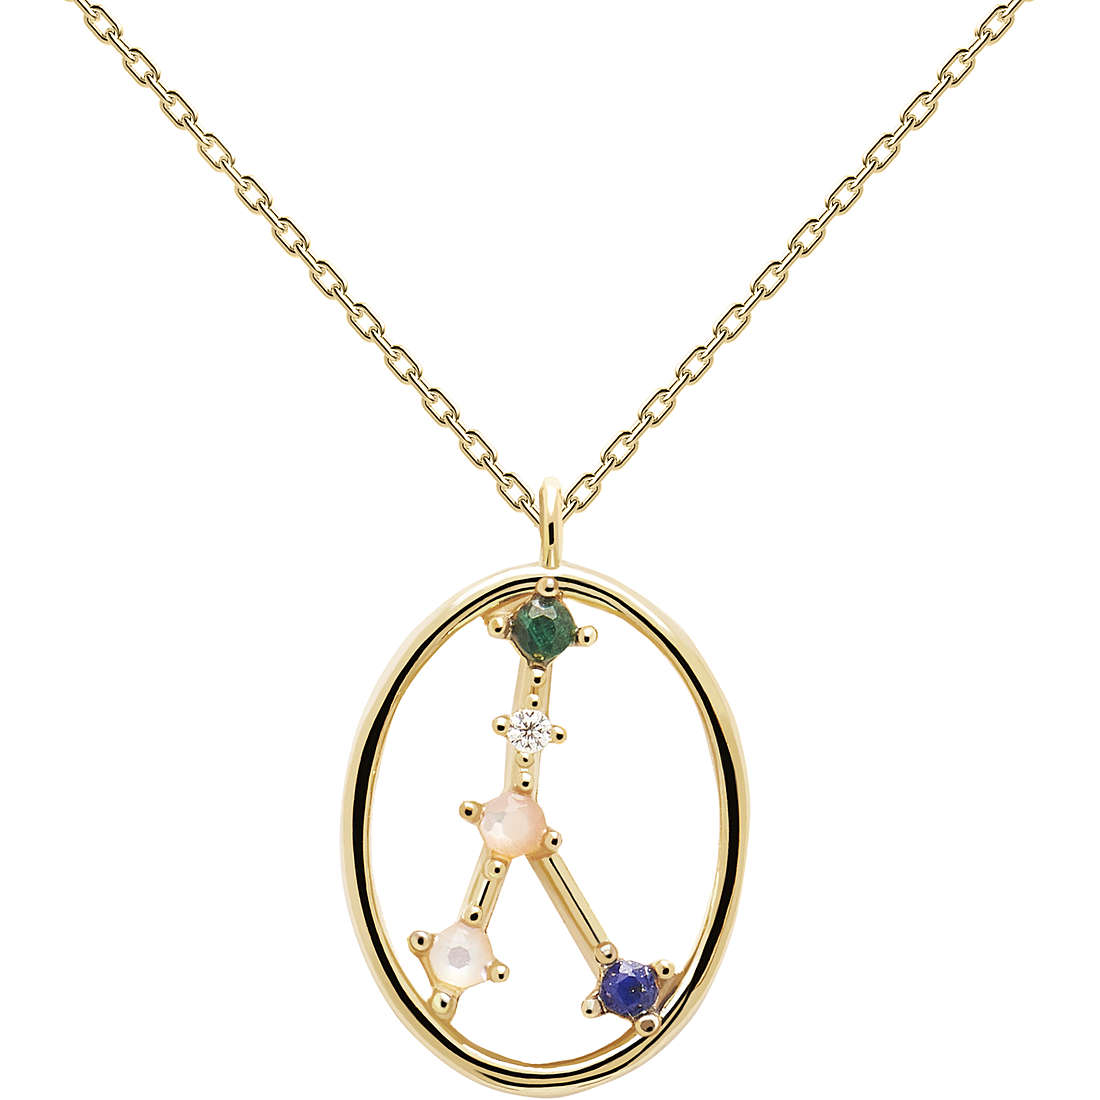 necklace woman zodiac sign Cancer PDPaola jewel Zodiac CO01-347-U